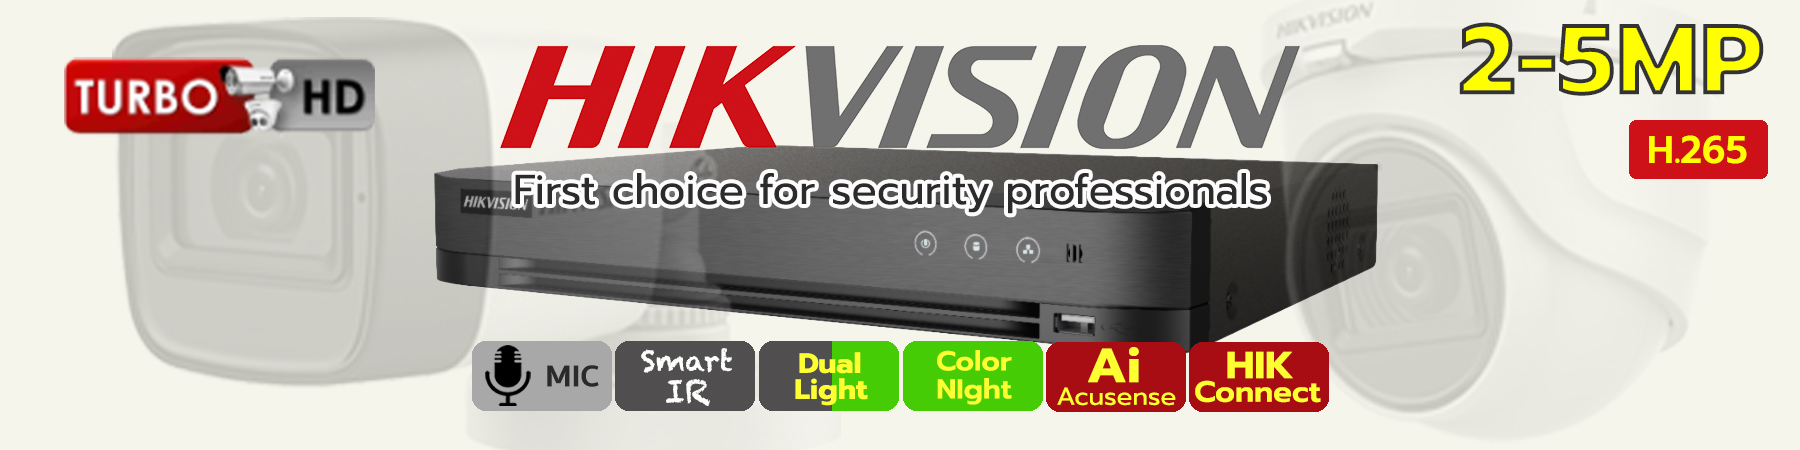 ชุดกล้อง Hikvision HDTVI, ชุดกล้อง Hikvision ไมค์ในตัว, ชุดกล้อง Hikvision ColorVu, ชุดกล้อง Hikvision Dual Light, ชุดกล้อง Hikvision Smart IR